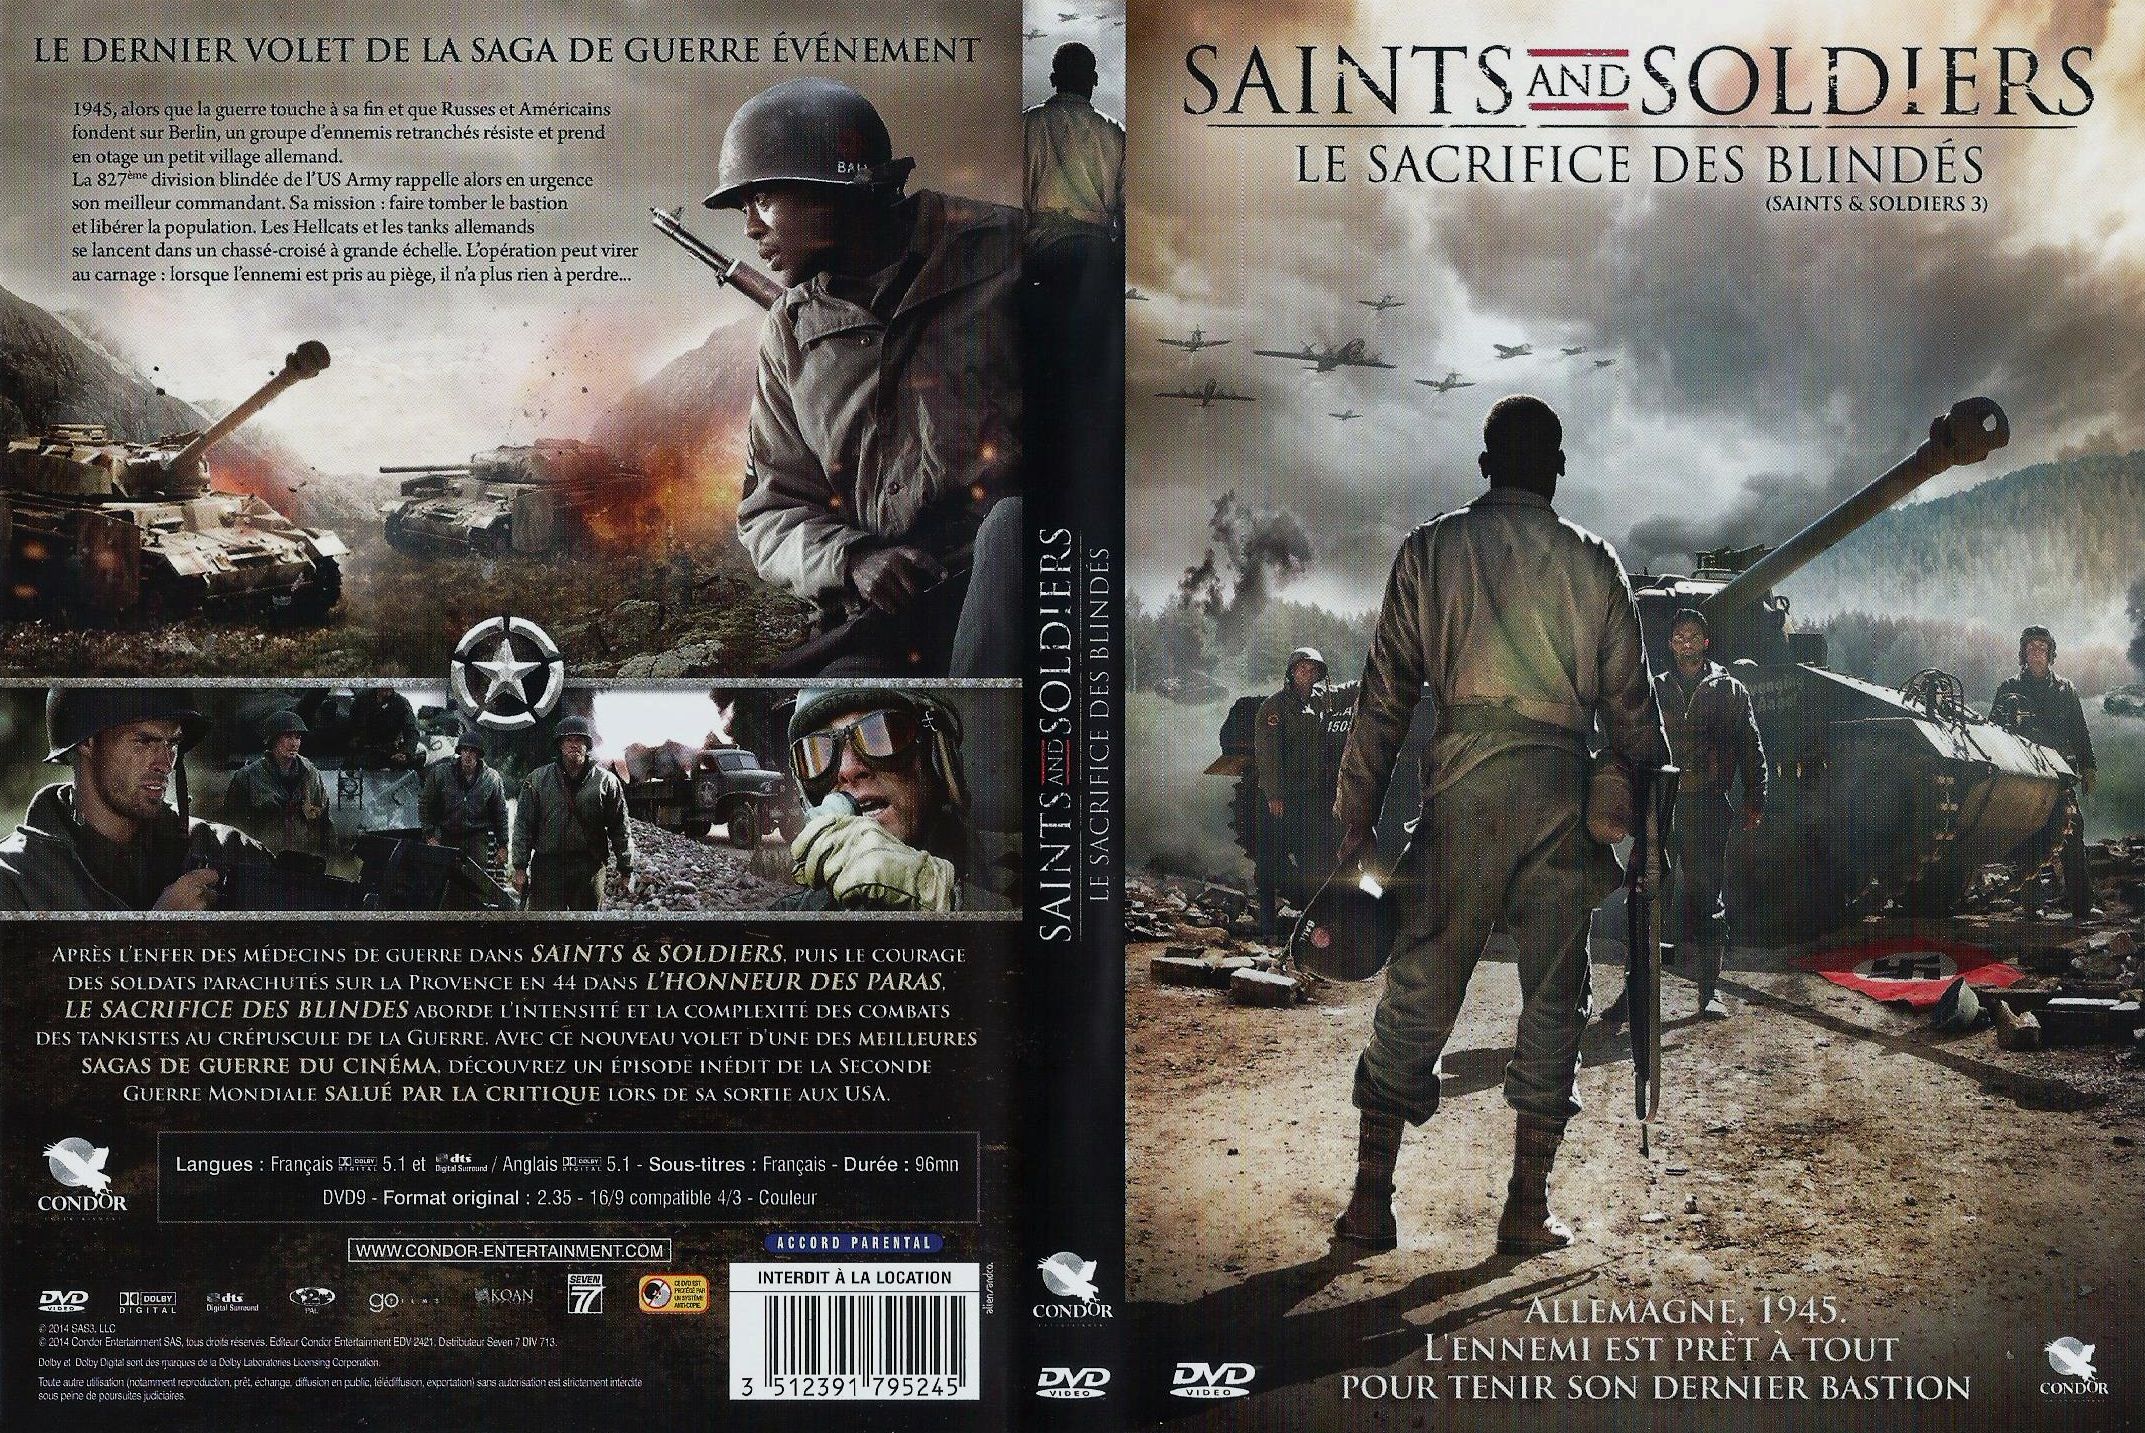 Jaquette DVD Saints and soldiers 3 le sacrifice des blinds